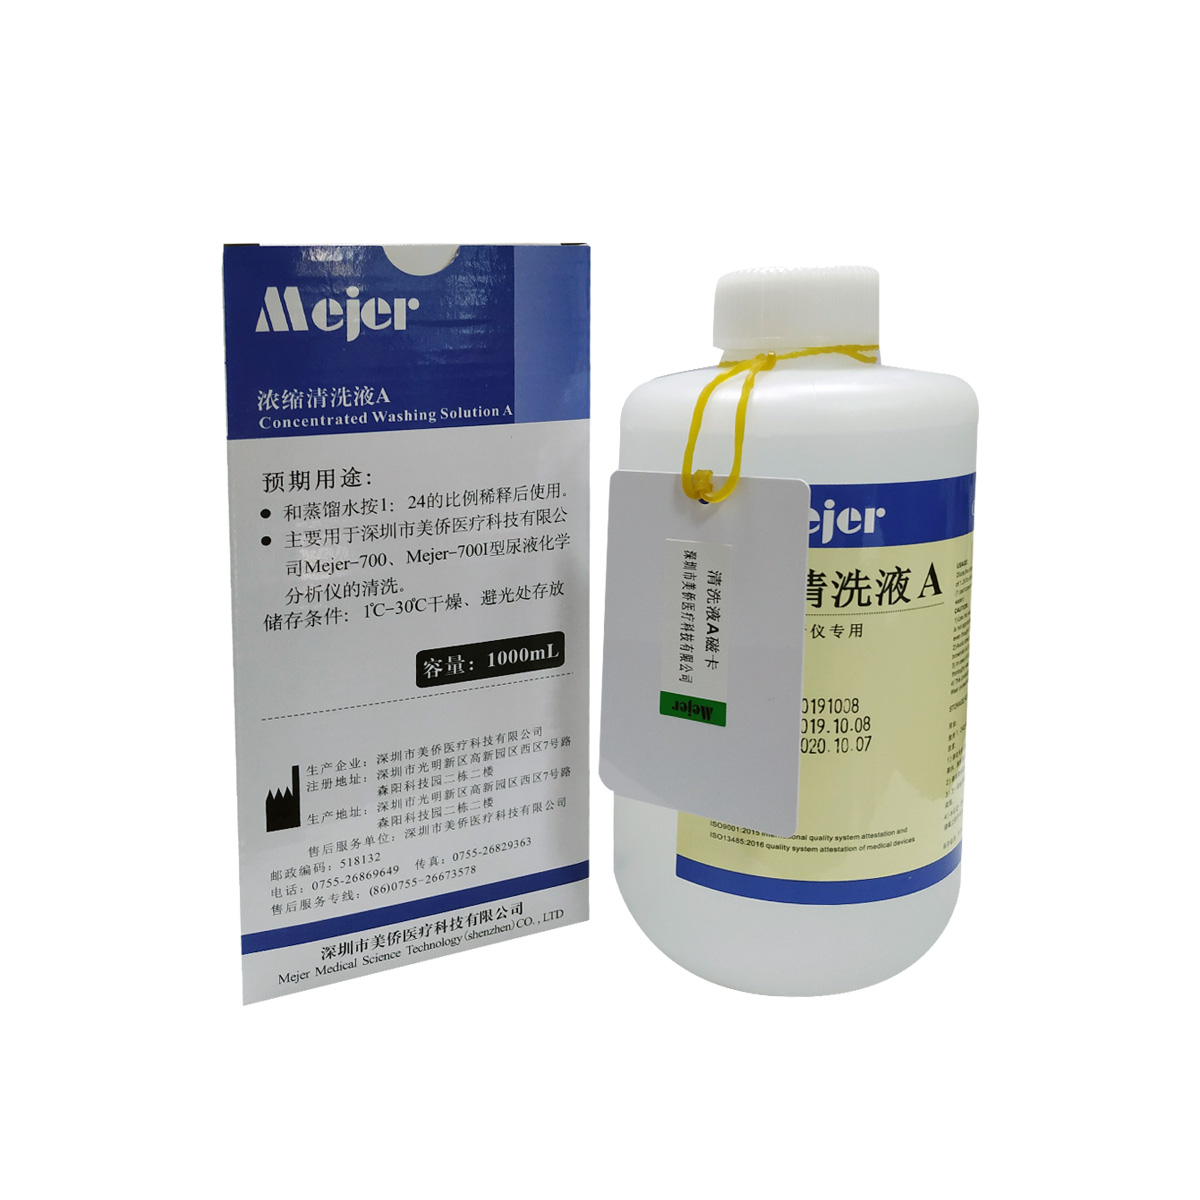 【美侨】全自动尿仪清洗液(浓缩清洗液A)/Mejer-700I型